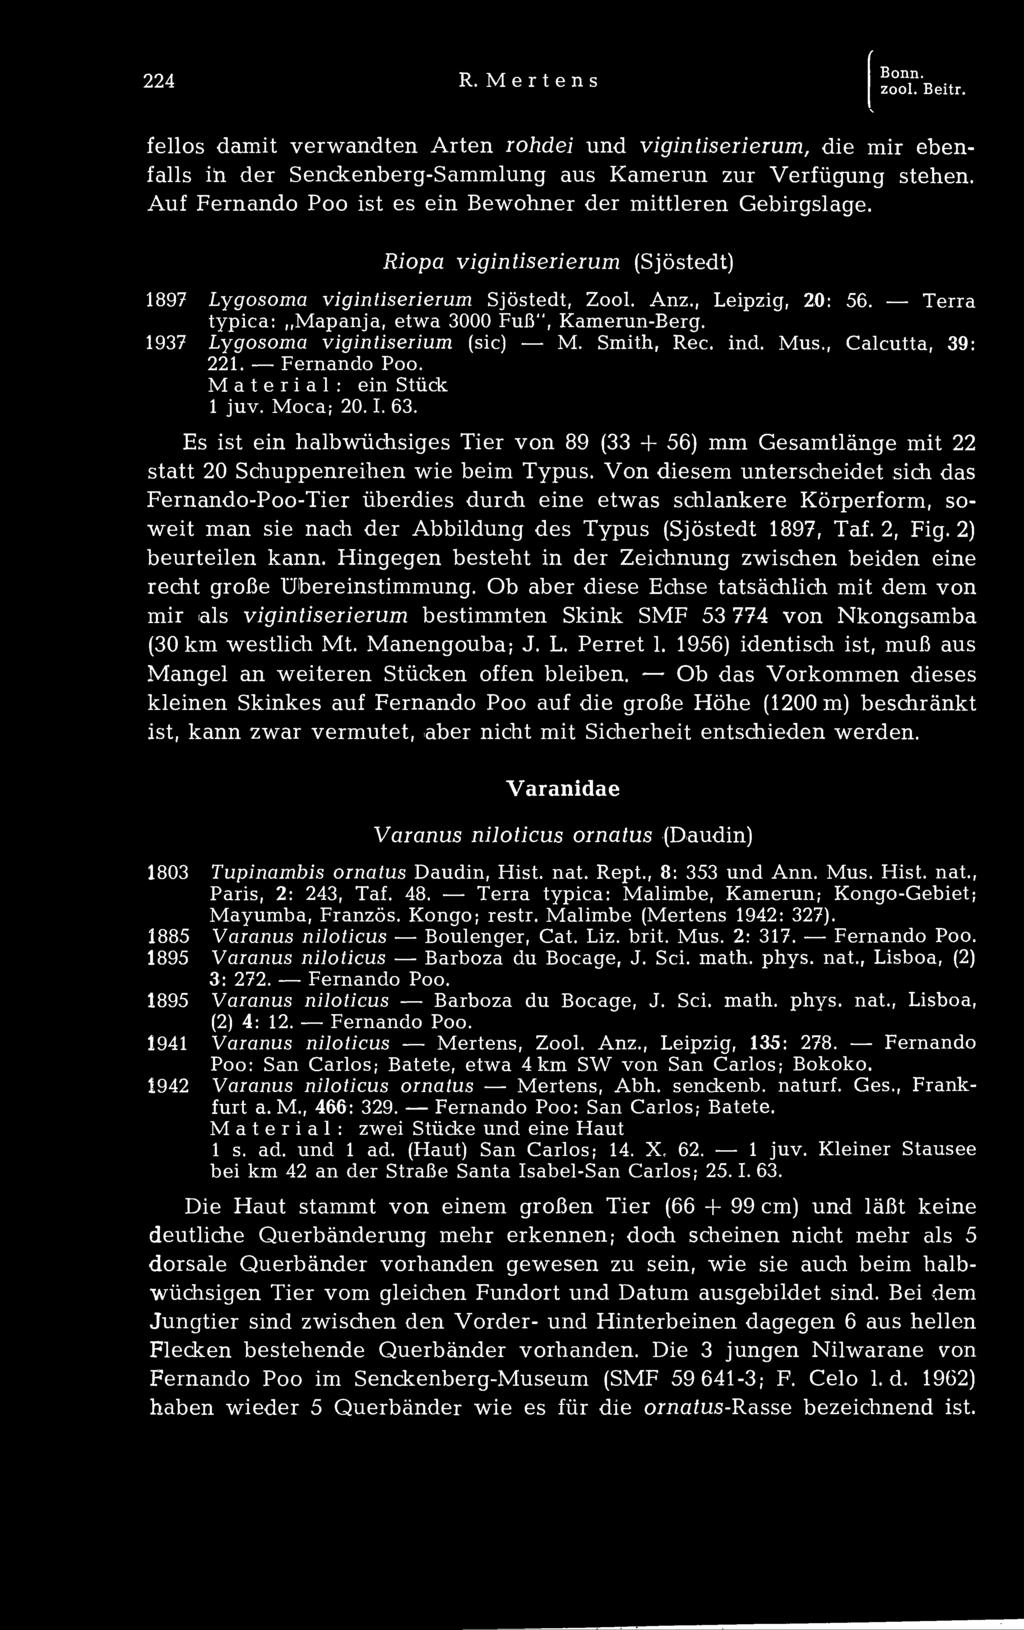 Terra typica: Mapanja, etwa 3000 Fuß", Kamerun-Berg. 1937 Lygosoma vigintiserium (sie) M. Smith, Ree. ind. Mus., Calcutta, 39: 221. Fernando ein Stück Material: 1 juv. Moca; 20. 1. 63.